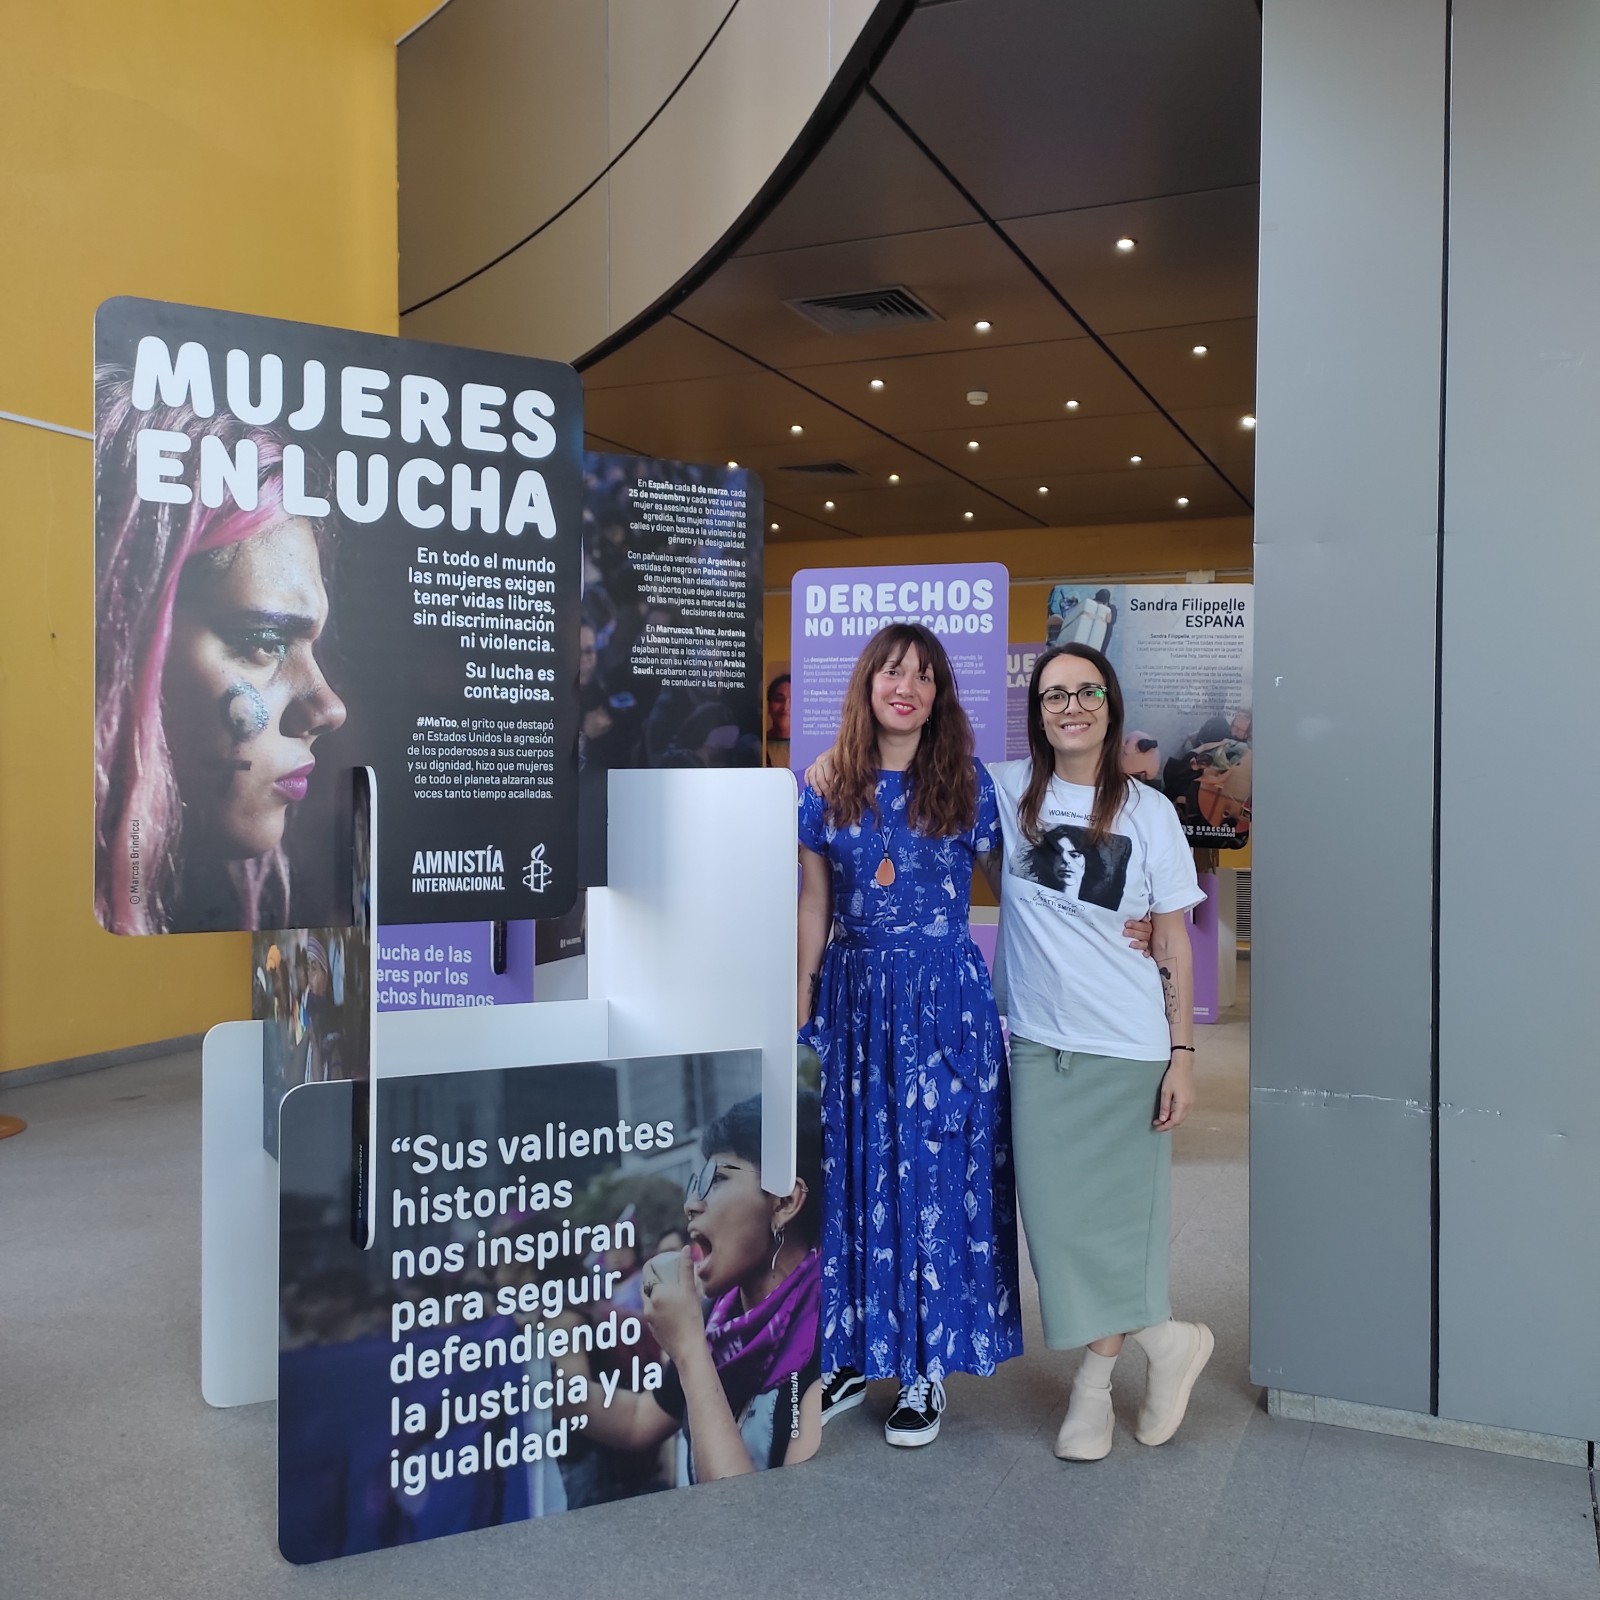 La exposición Mujeres en Lucha puede verse en Mérida